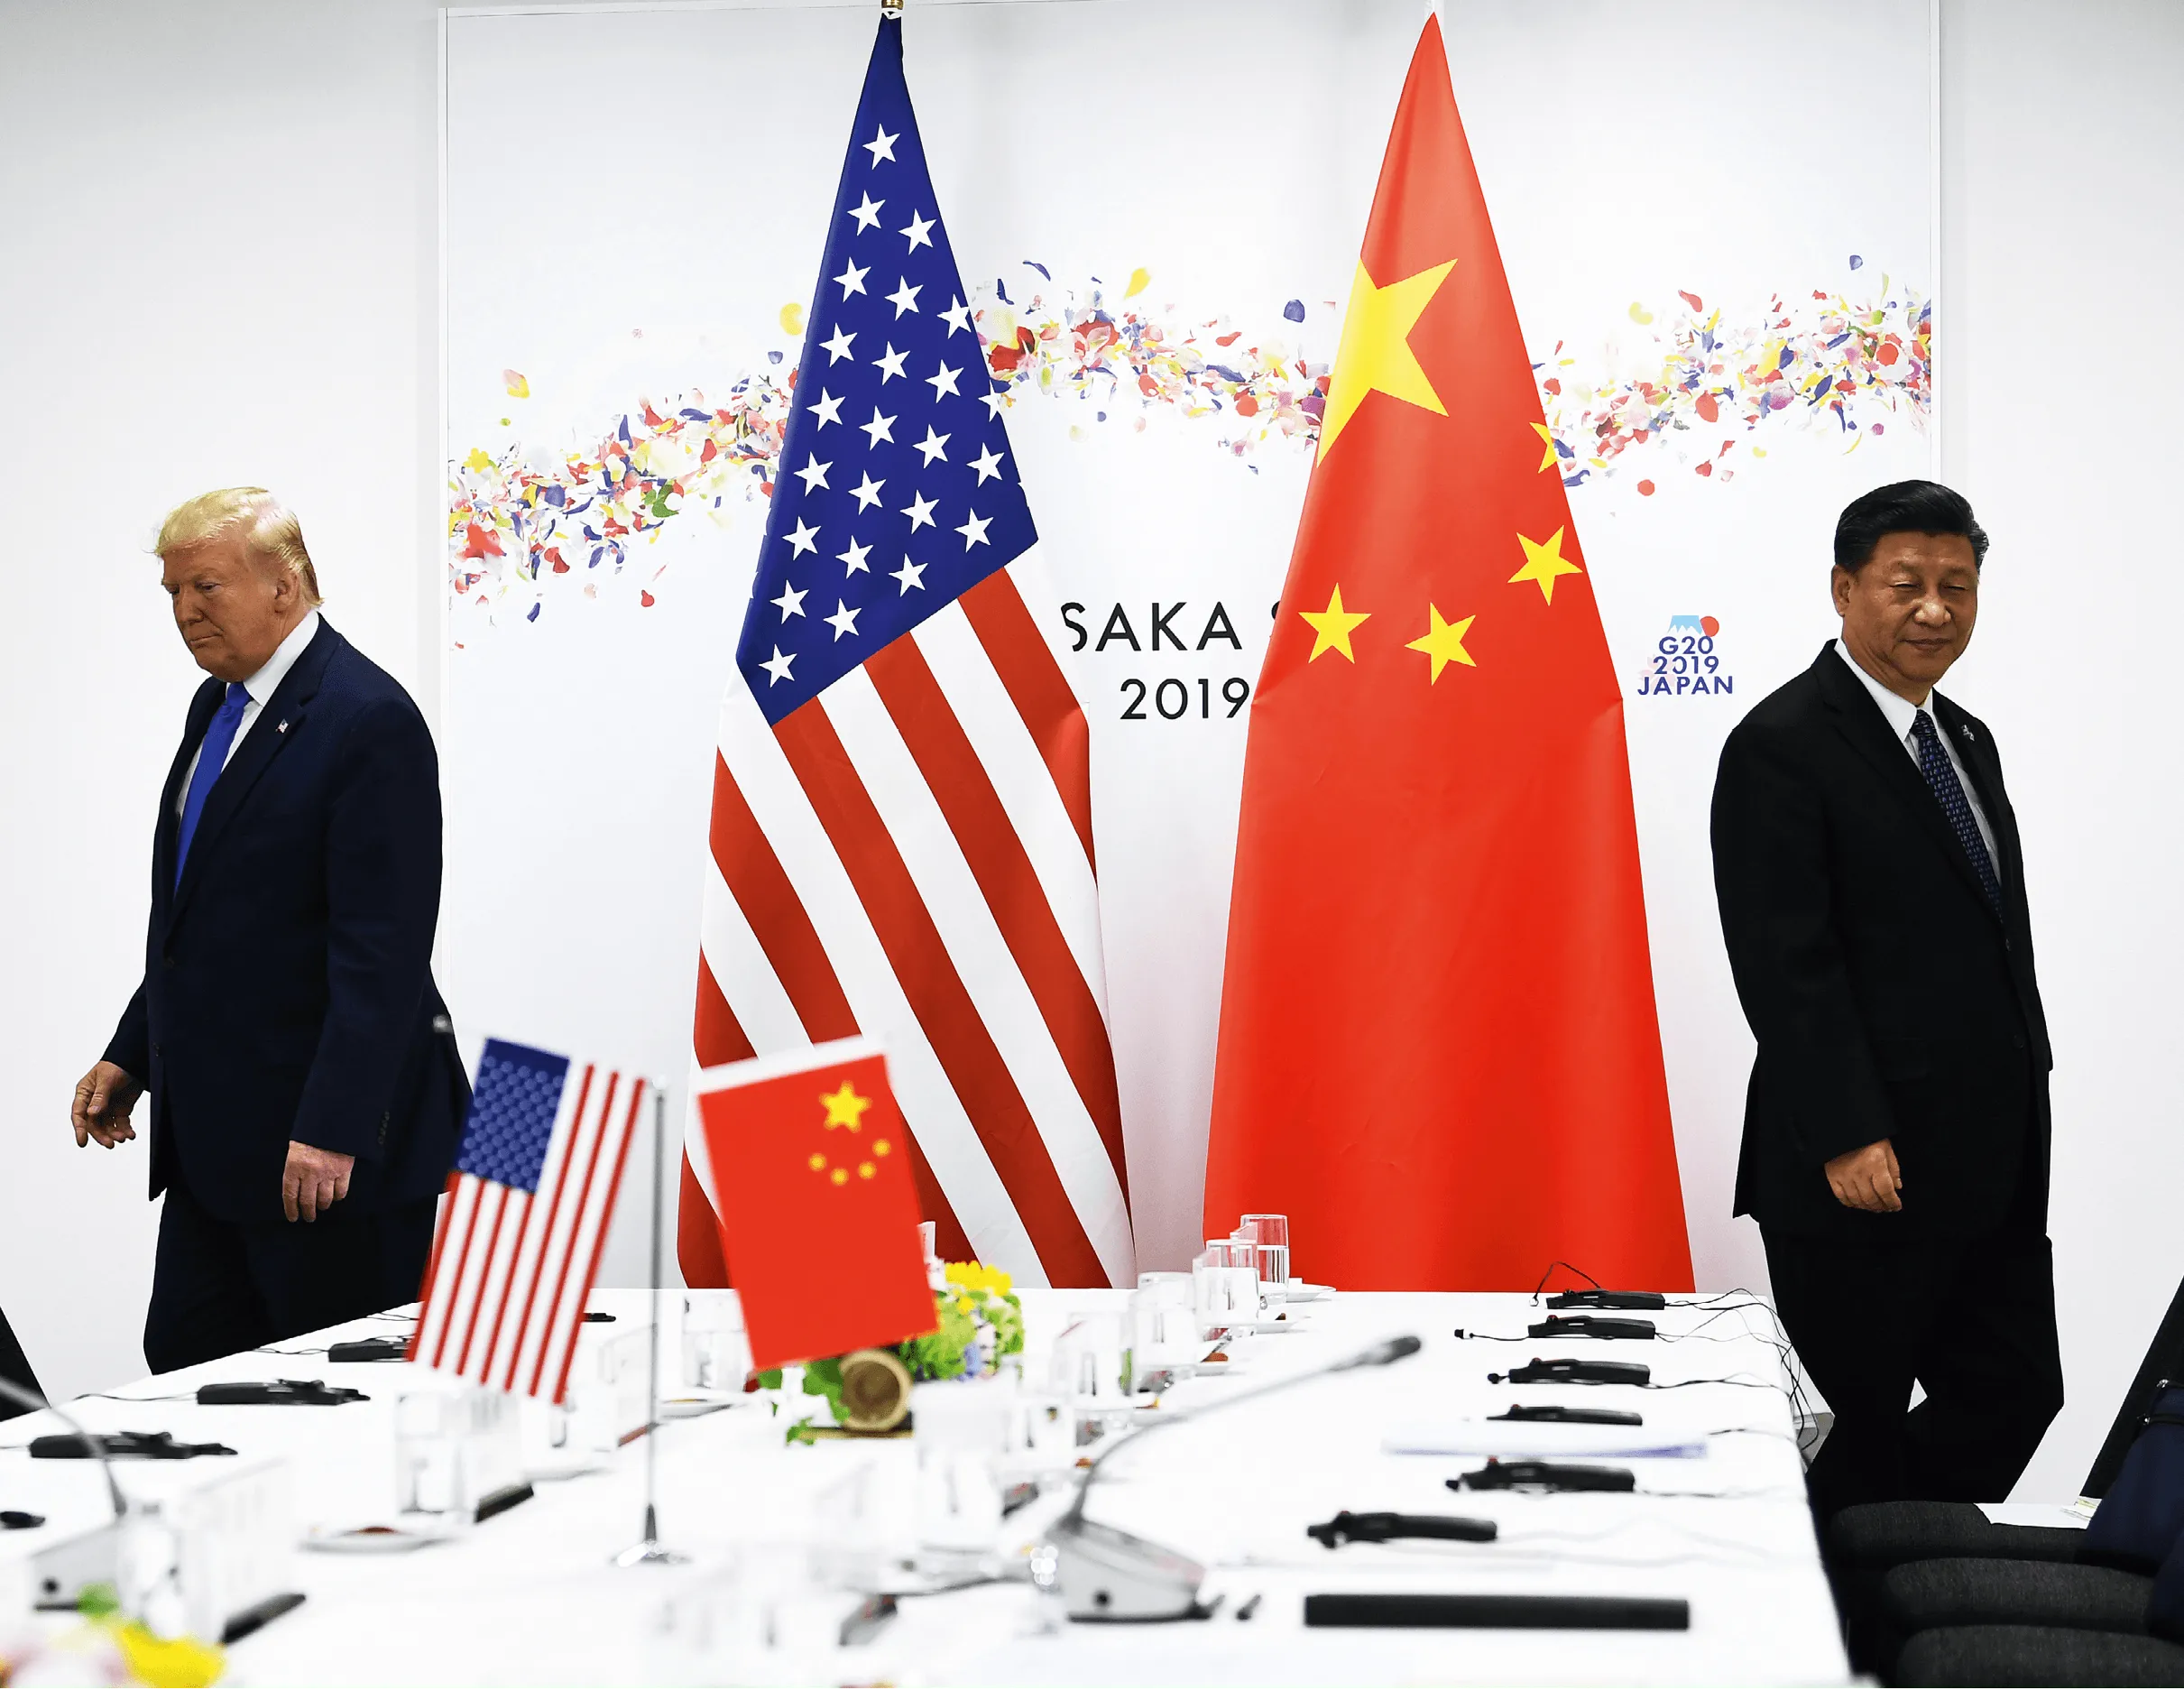 Donald Trump, président des États-Unis (2017-2021) et Xi Jinping (président de la Chine depuis 2013) à Osaka (Japon), 2019